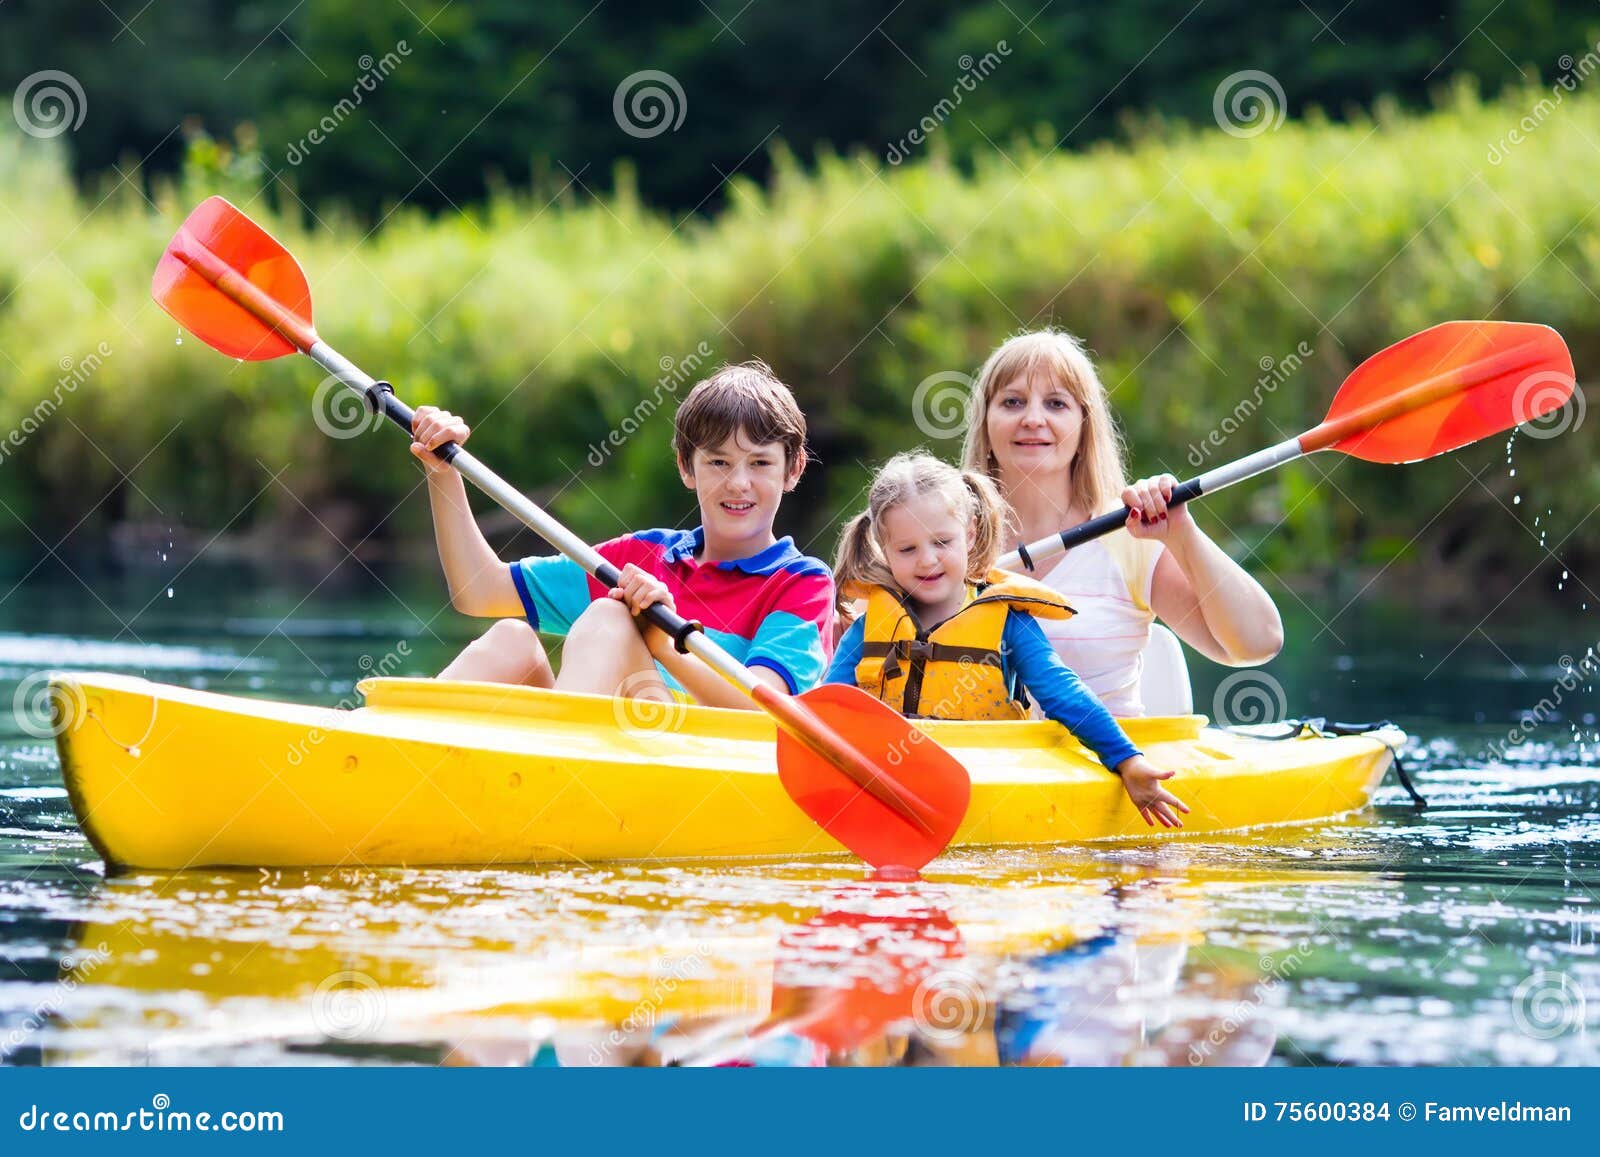 Rodzinna cieszy się kajak przejażdżka na rzece. Szczęśliwa rodzina z dwa dzieciakami cieszy się kajaka jedzie na pięknej rzece Matka z małej dziewczynki i nastolatka chłopiec kayaking na gorącym letnim dniu Wodnego sporta zabawa Czółno i łódź dla dzieci